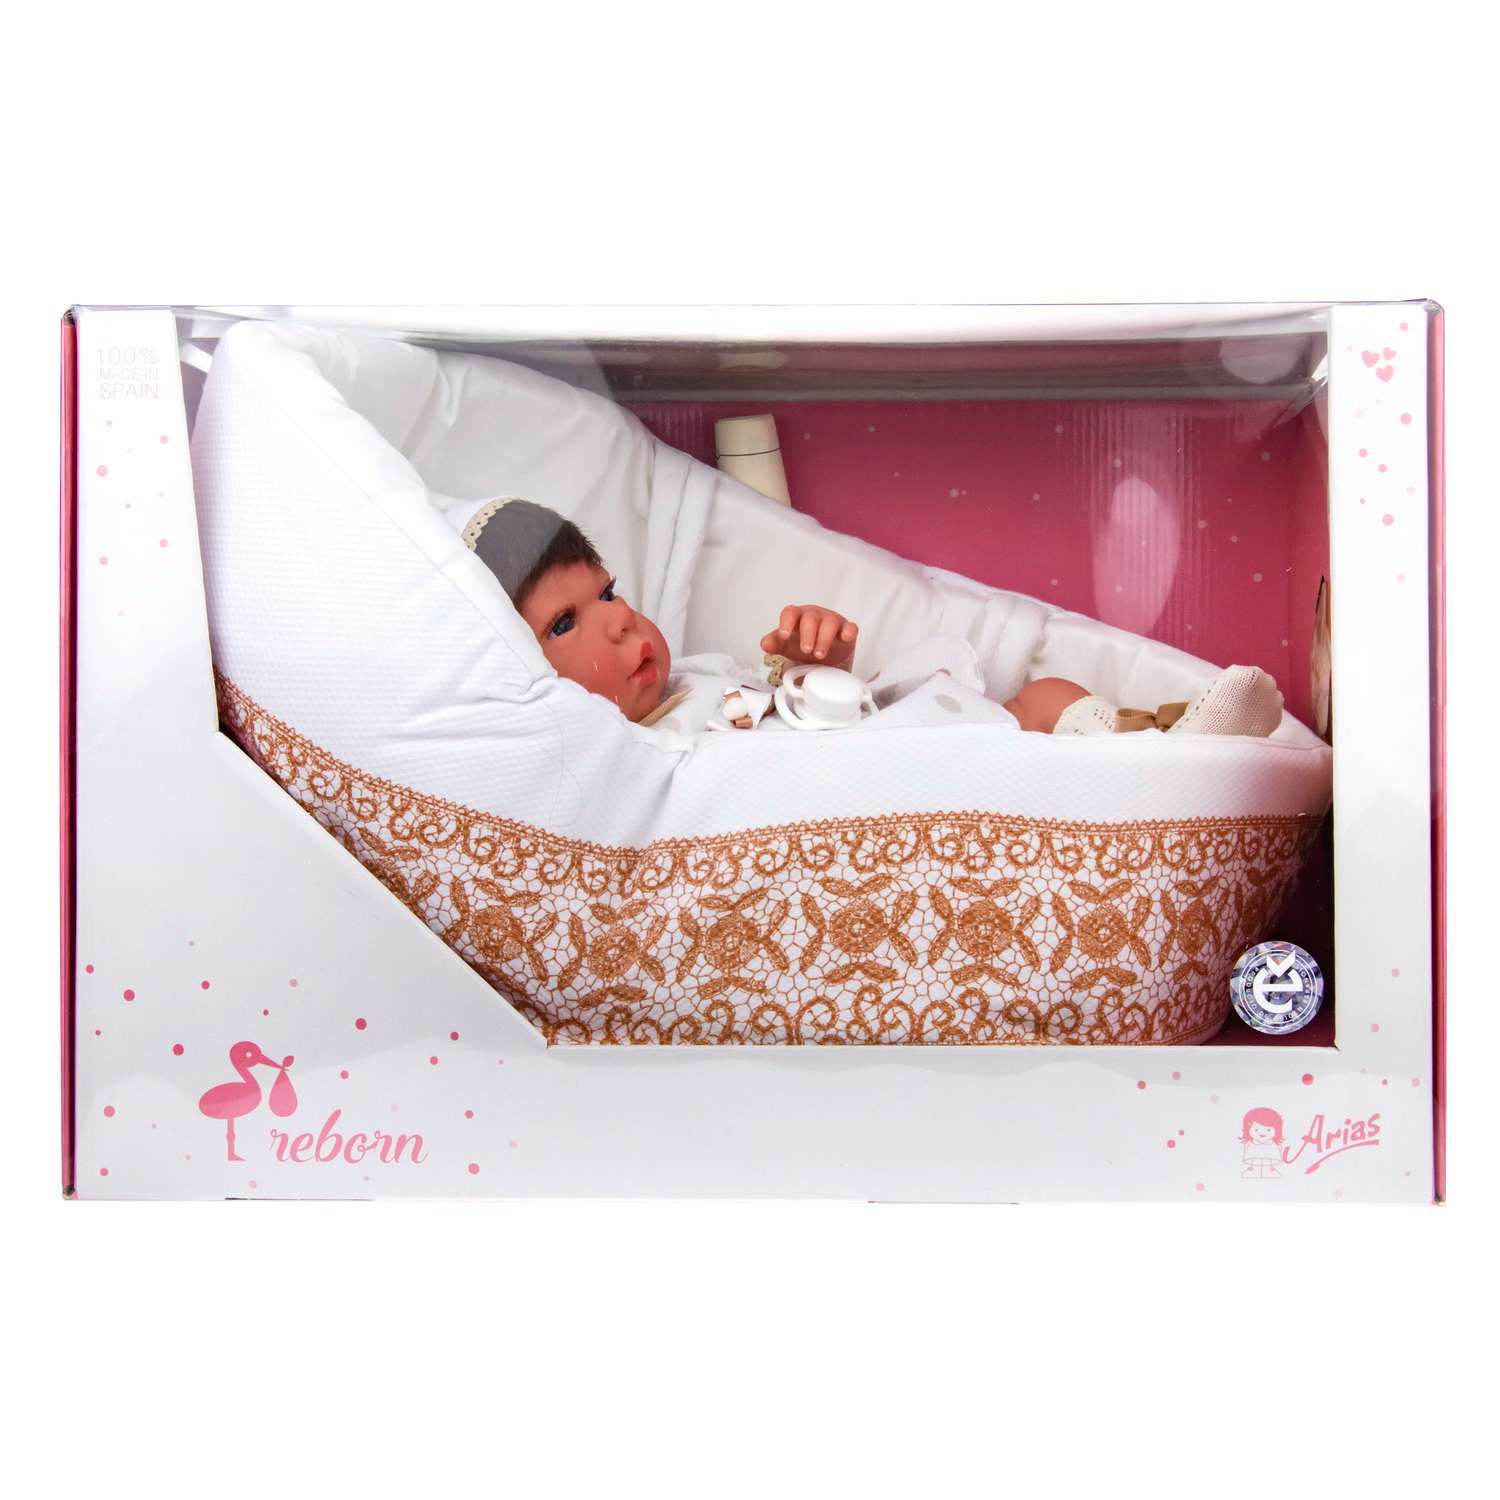 Кукла Arias ReBorns Candy реалистичный новорожденный пупс 40см Т17435 - фото 10